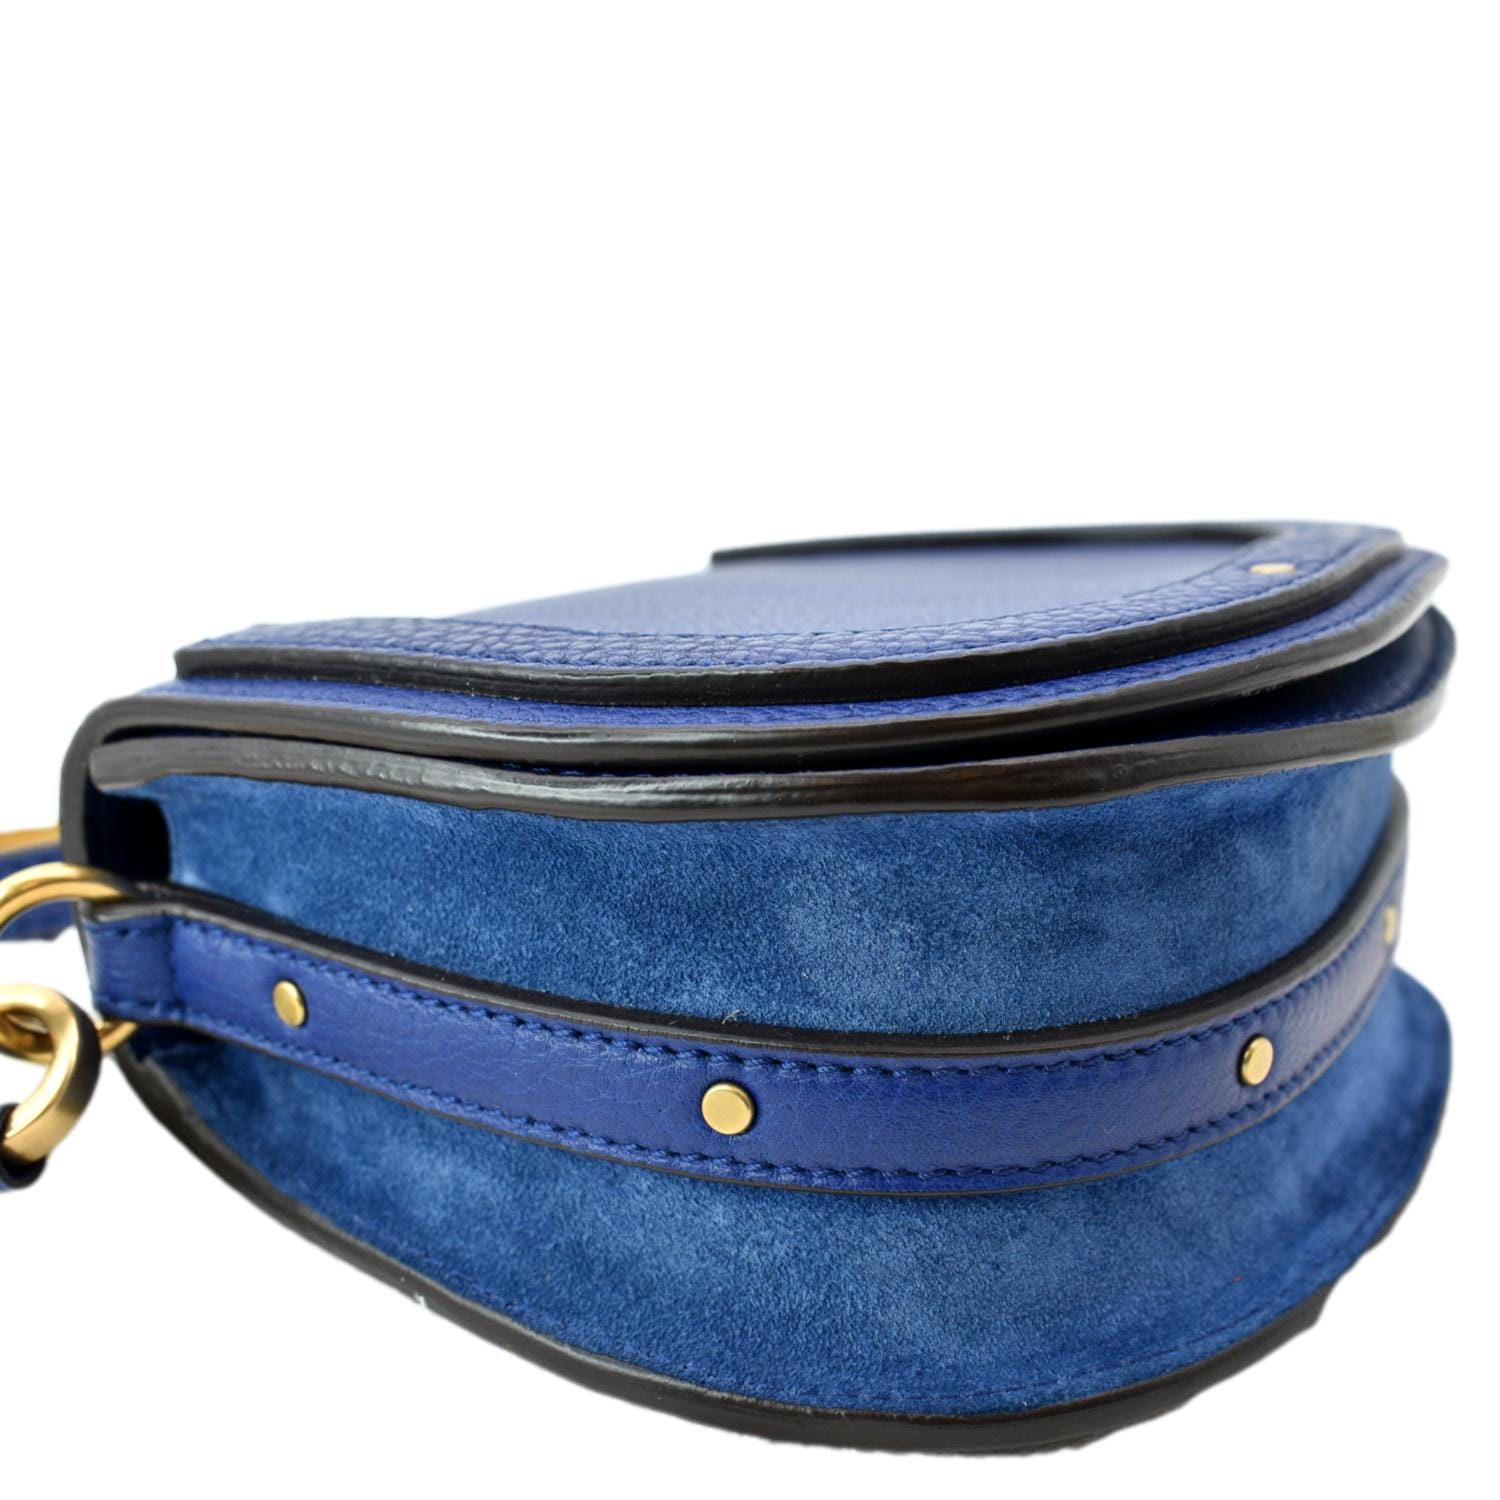 Chloe Nile Bracelet Small Blue Bag